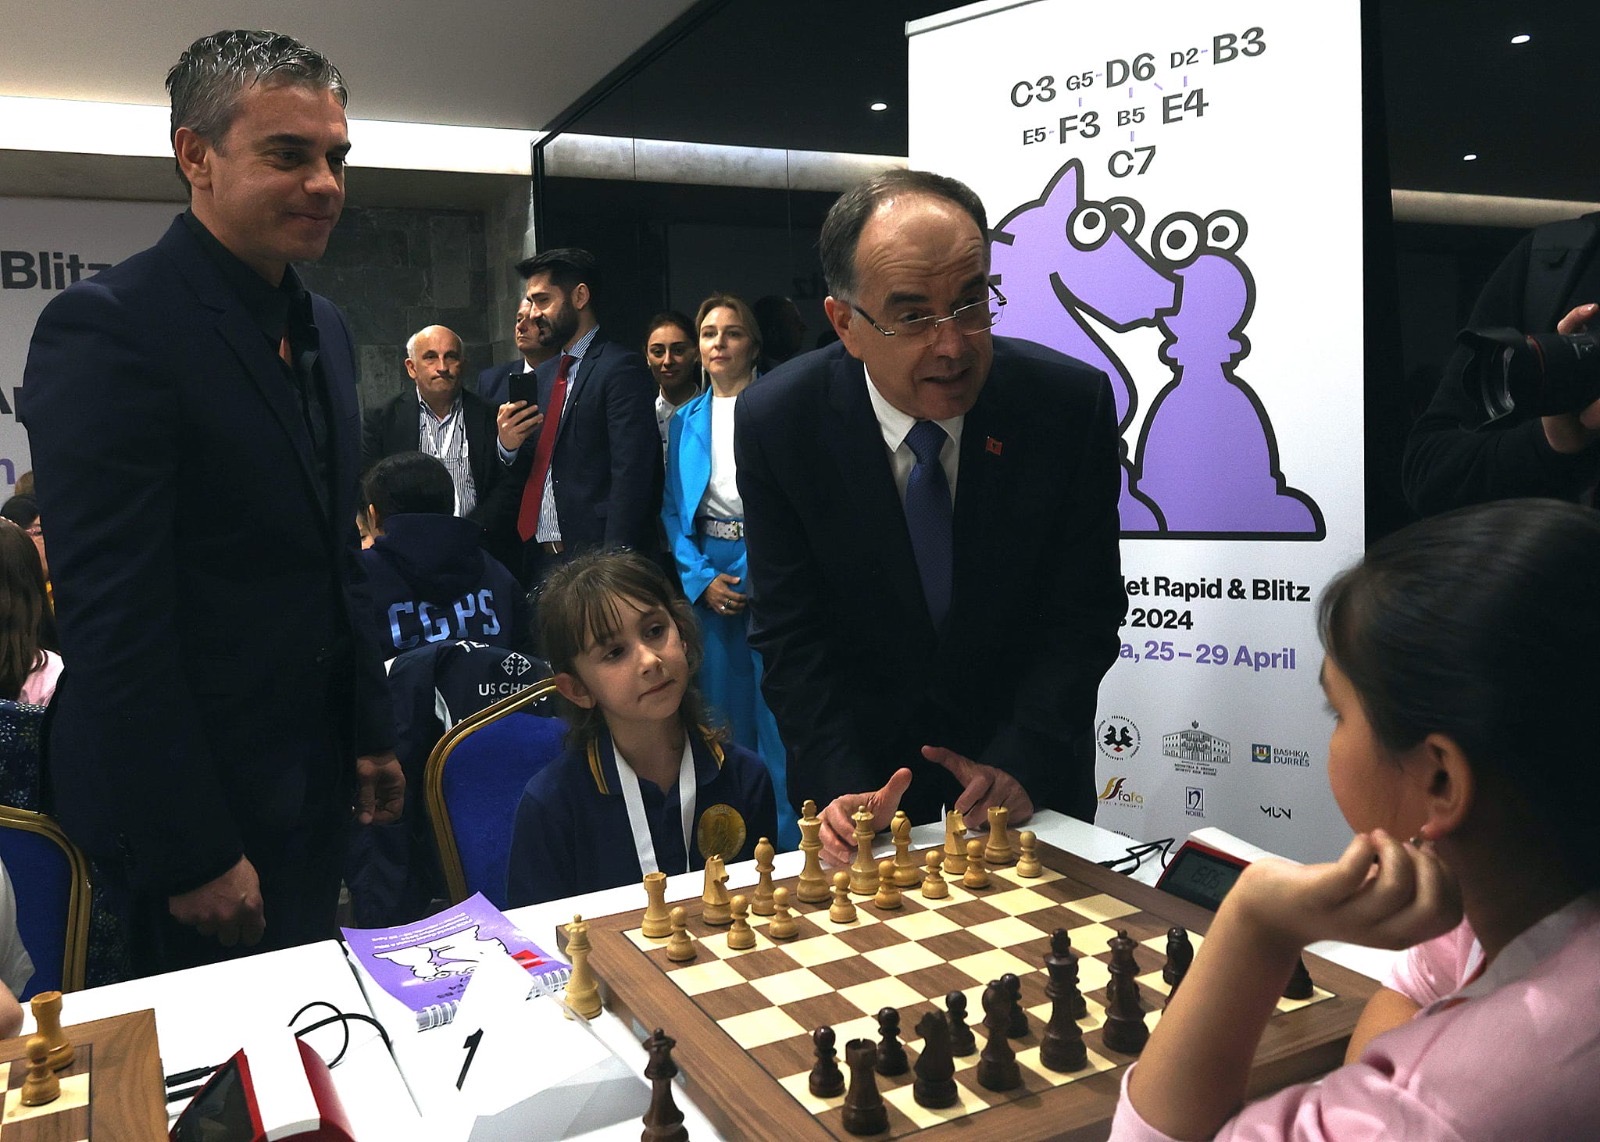 Presidenti Begaj, bën lëvizjen e parë të shahut në Kampionatin Ndërkombëtar të këtij sporti të moshave 8-12 vjeç në Durrës